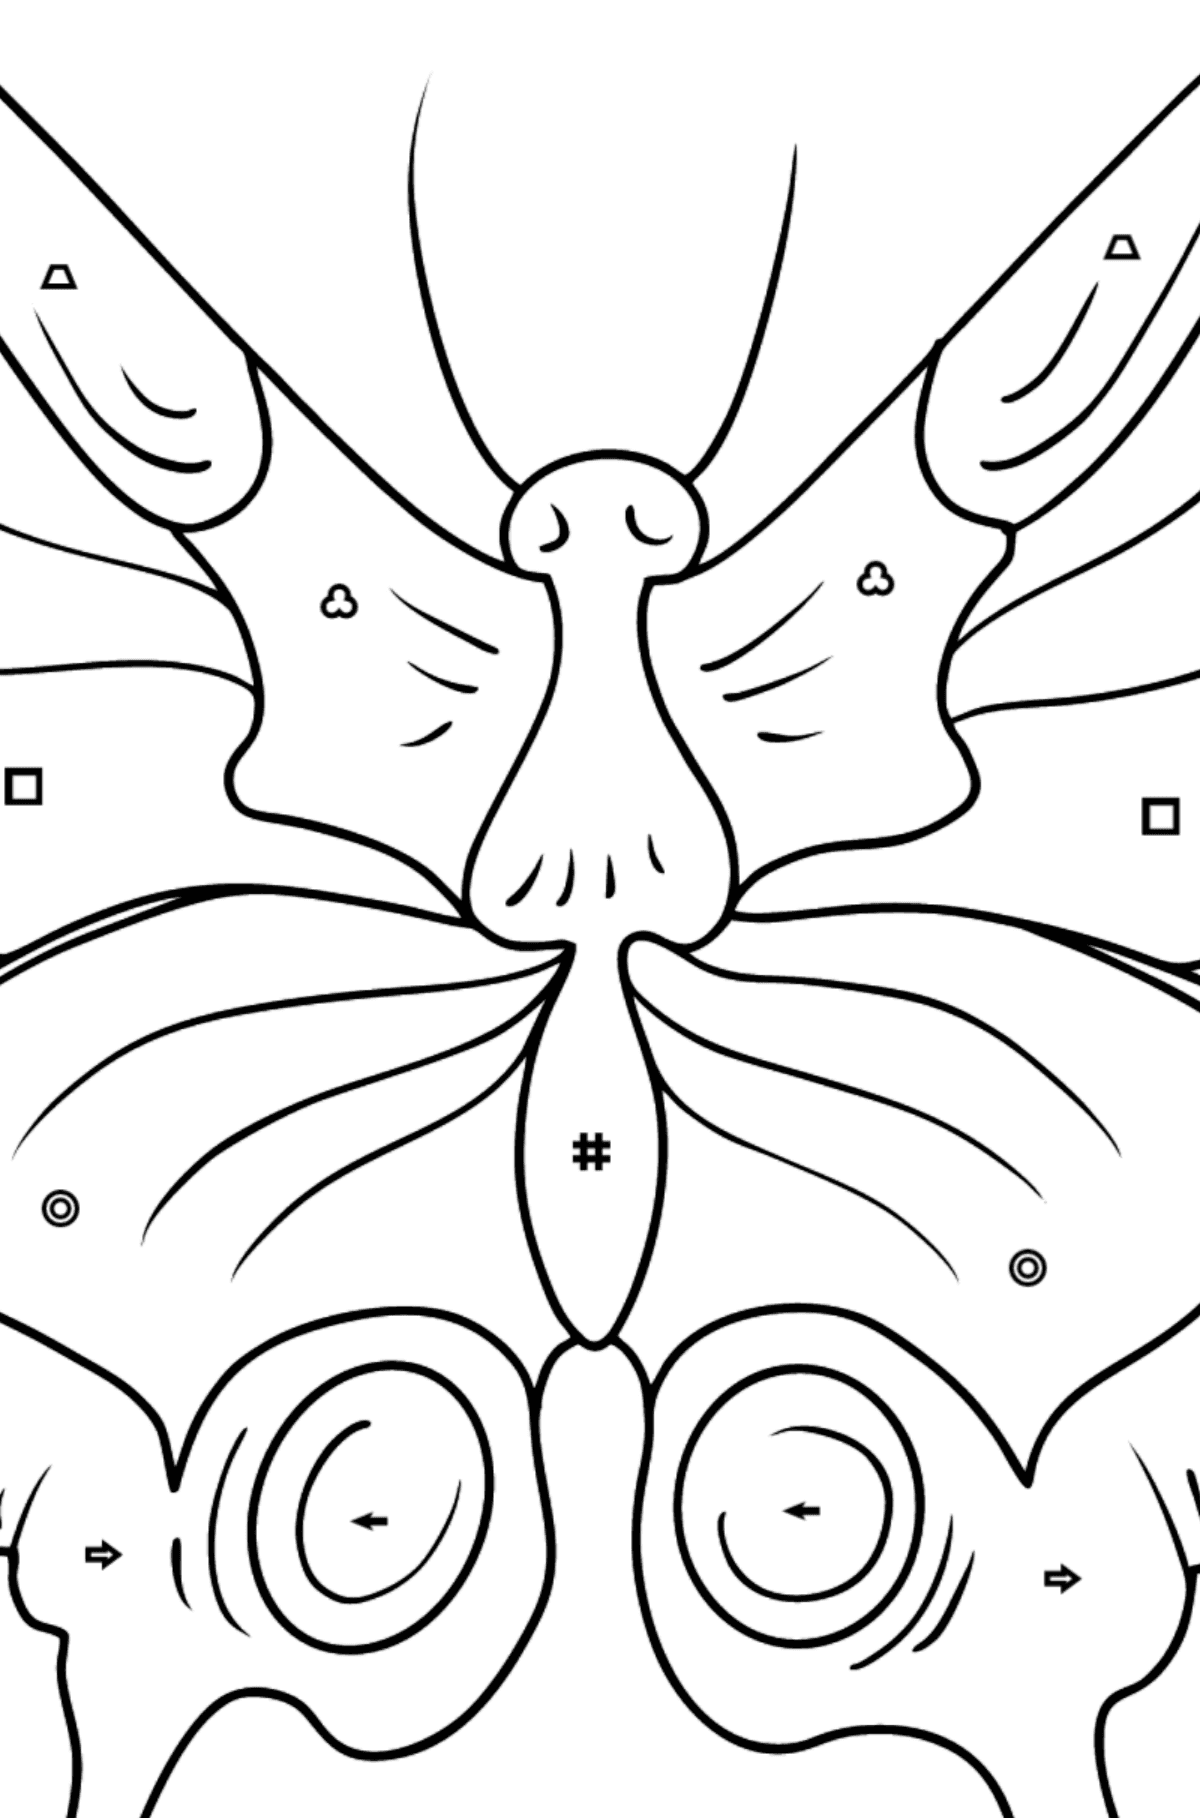 Dibujo de Mariposa cola de golondrina para colorear - Colorear por Símbolos para Niños